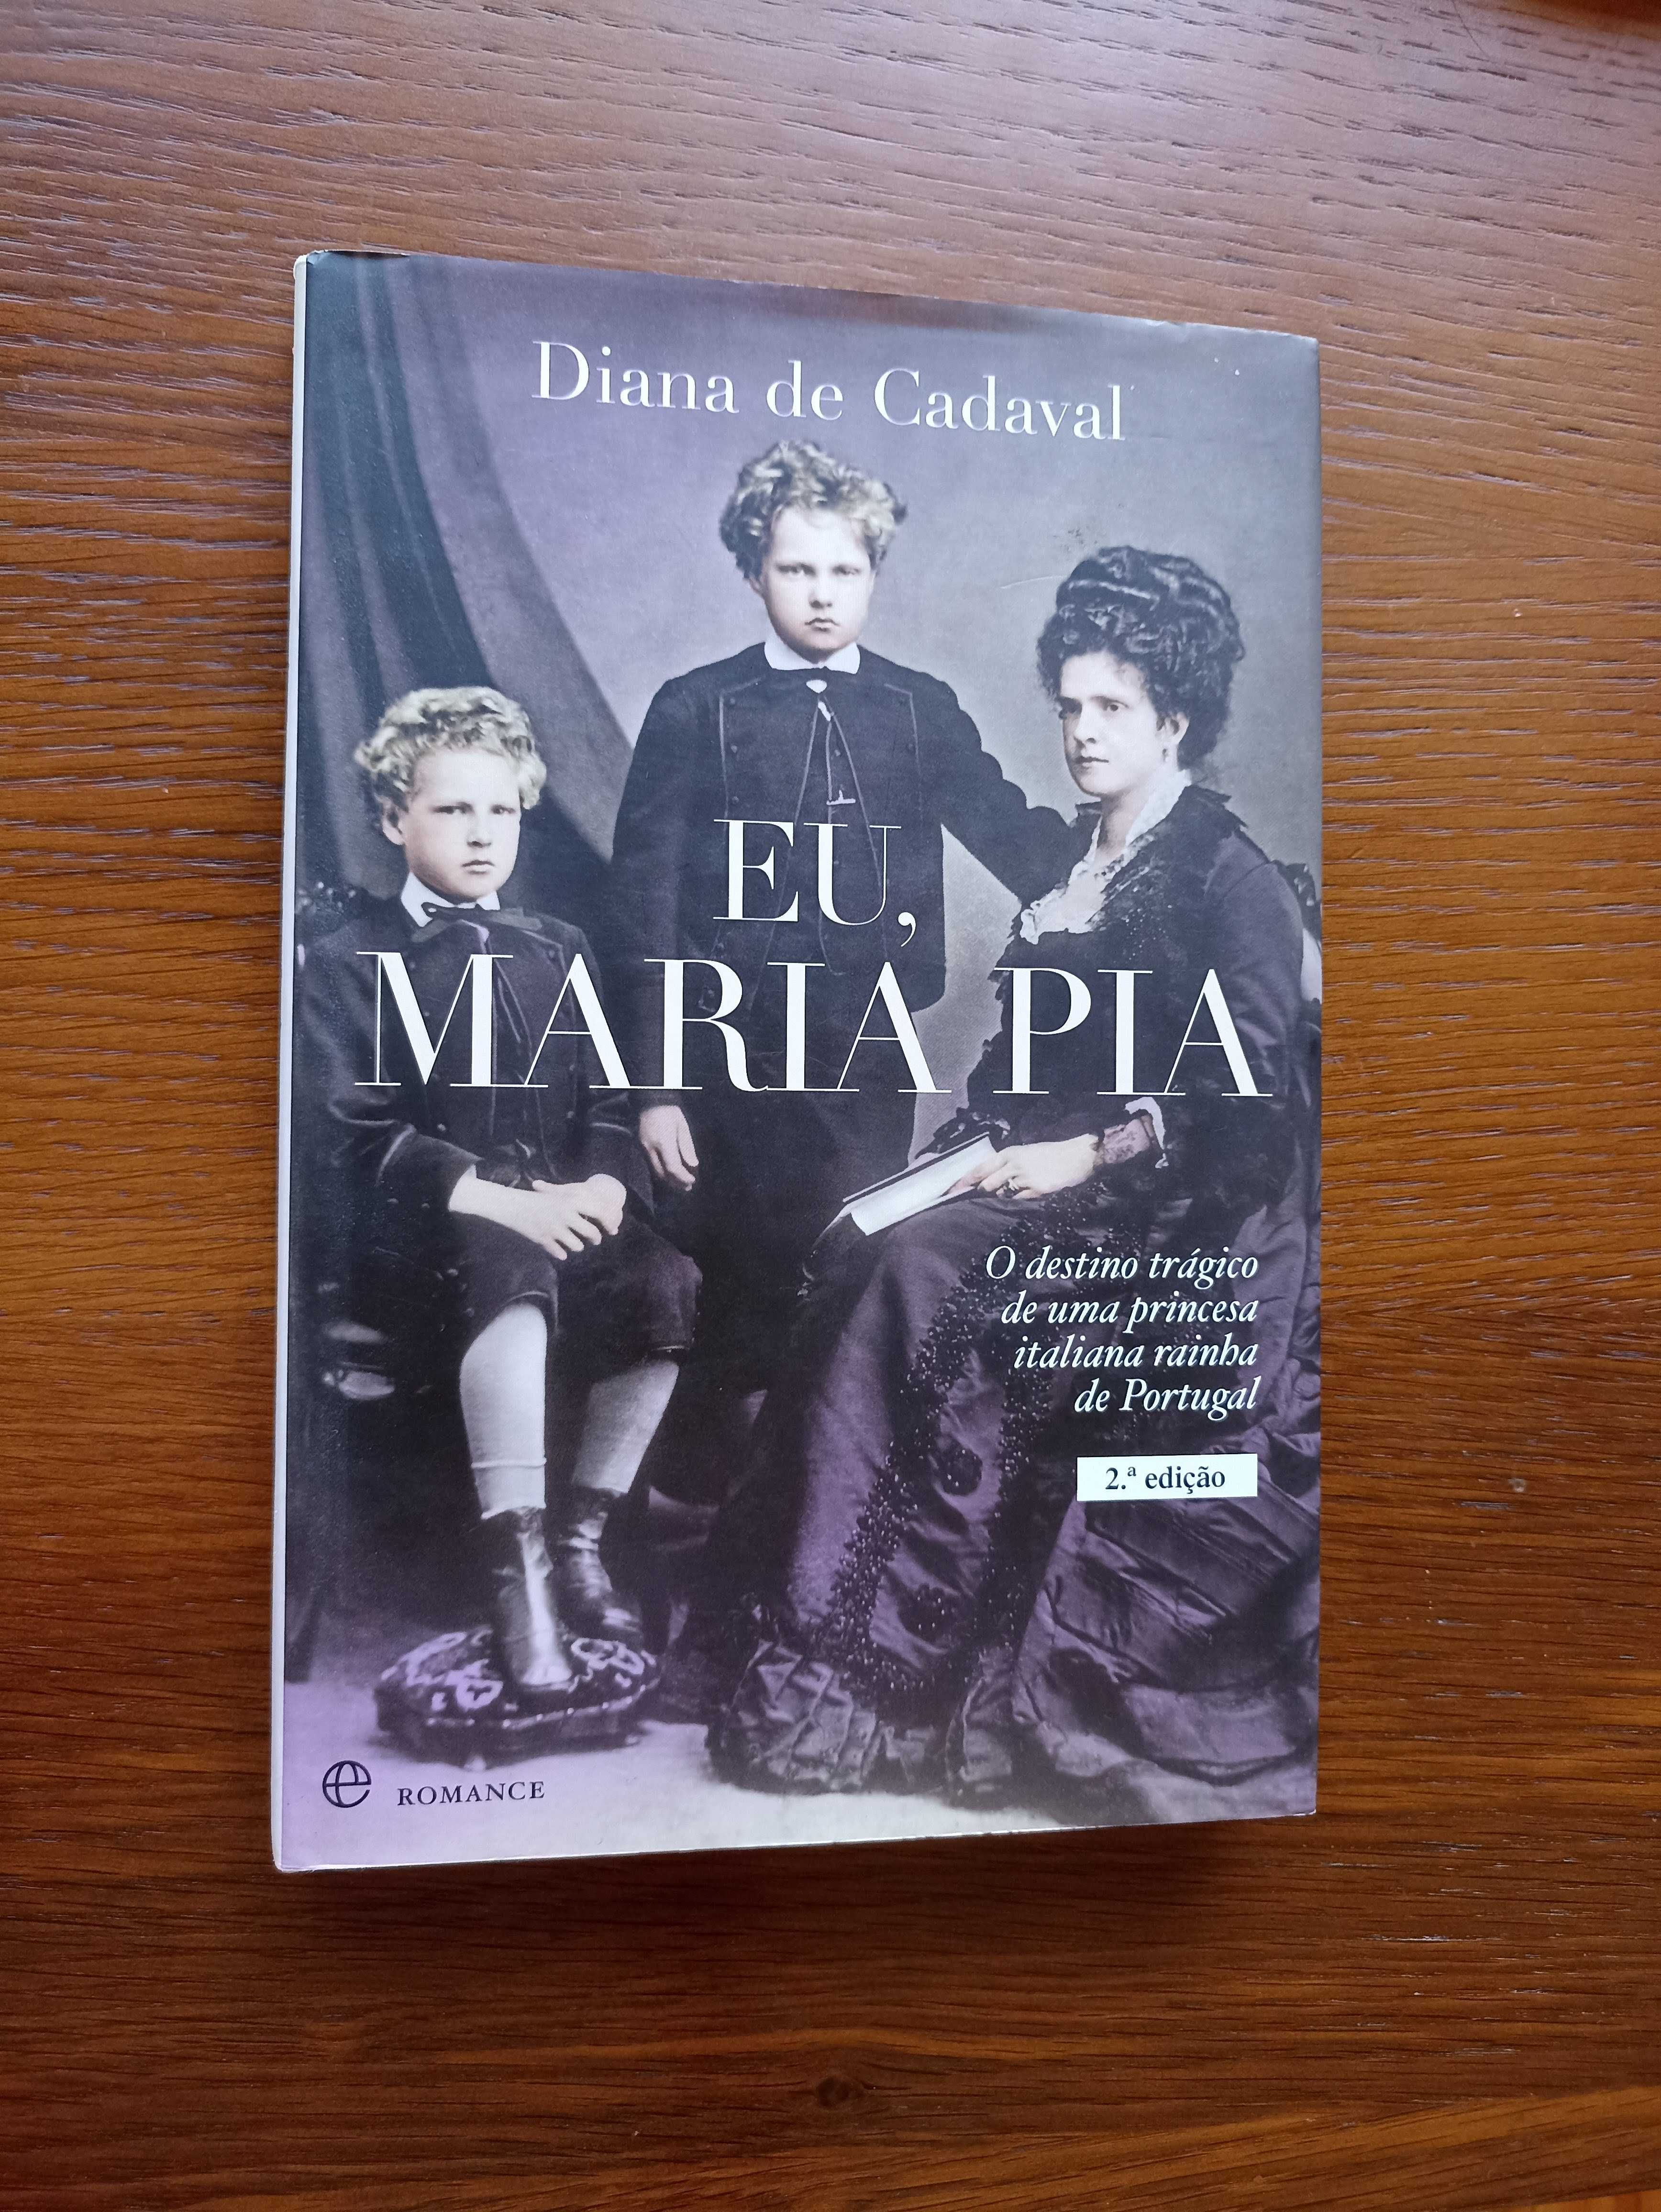 Livros sobre rainhas portuguesas